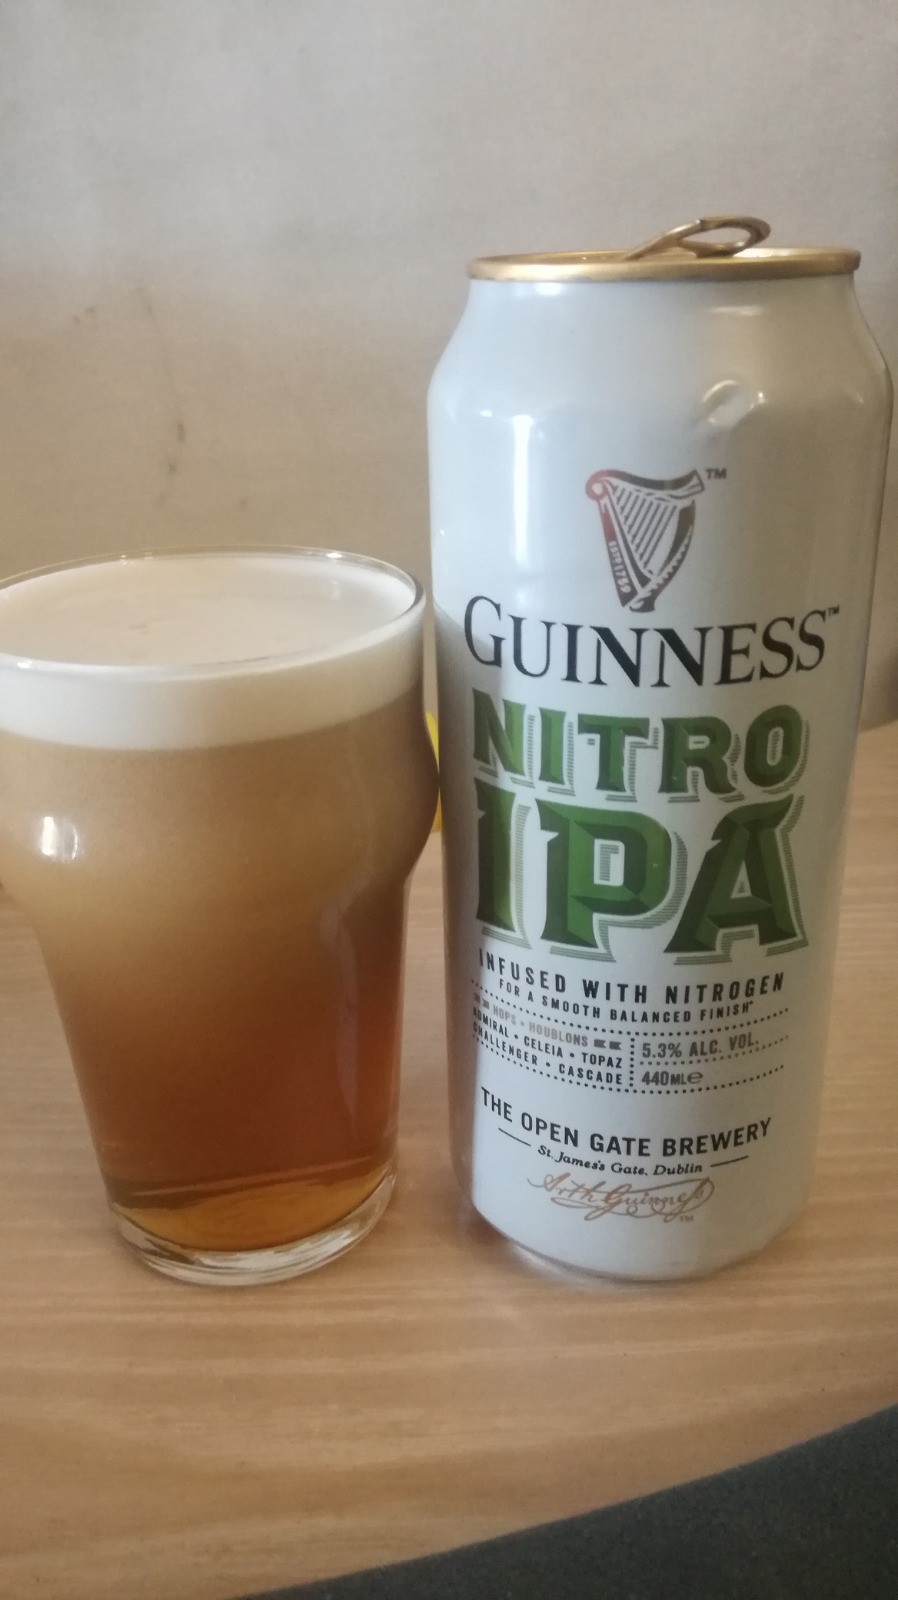 Guinness nitro ipa